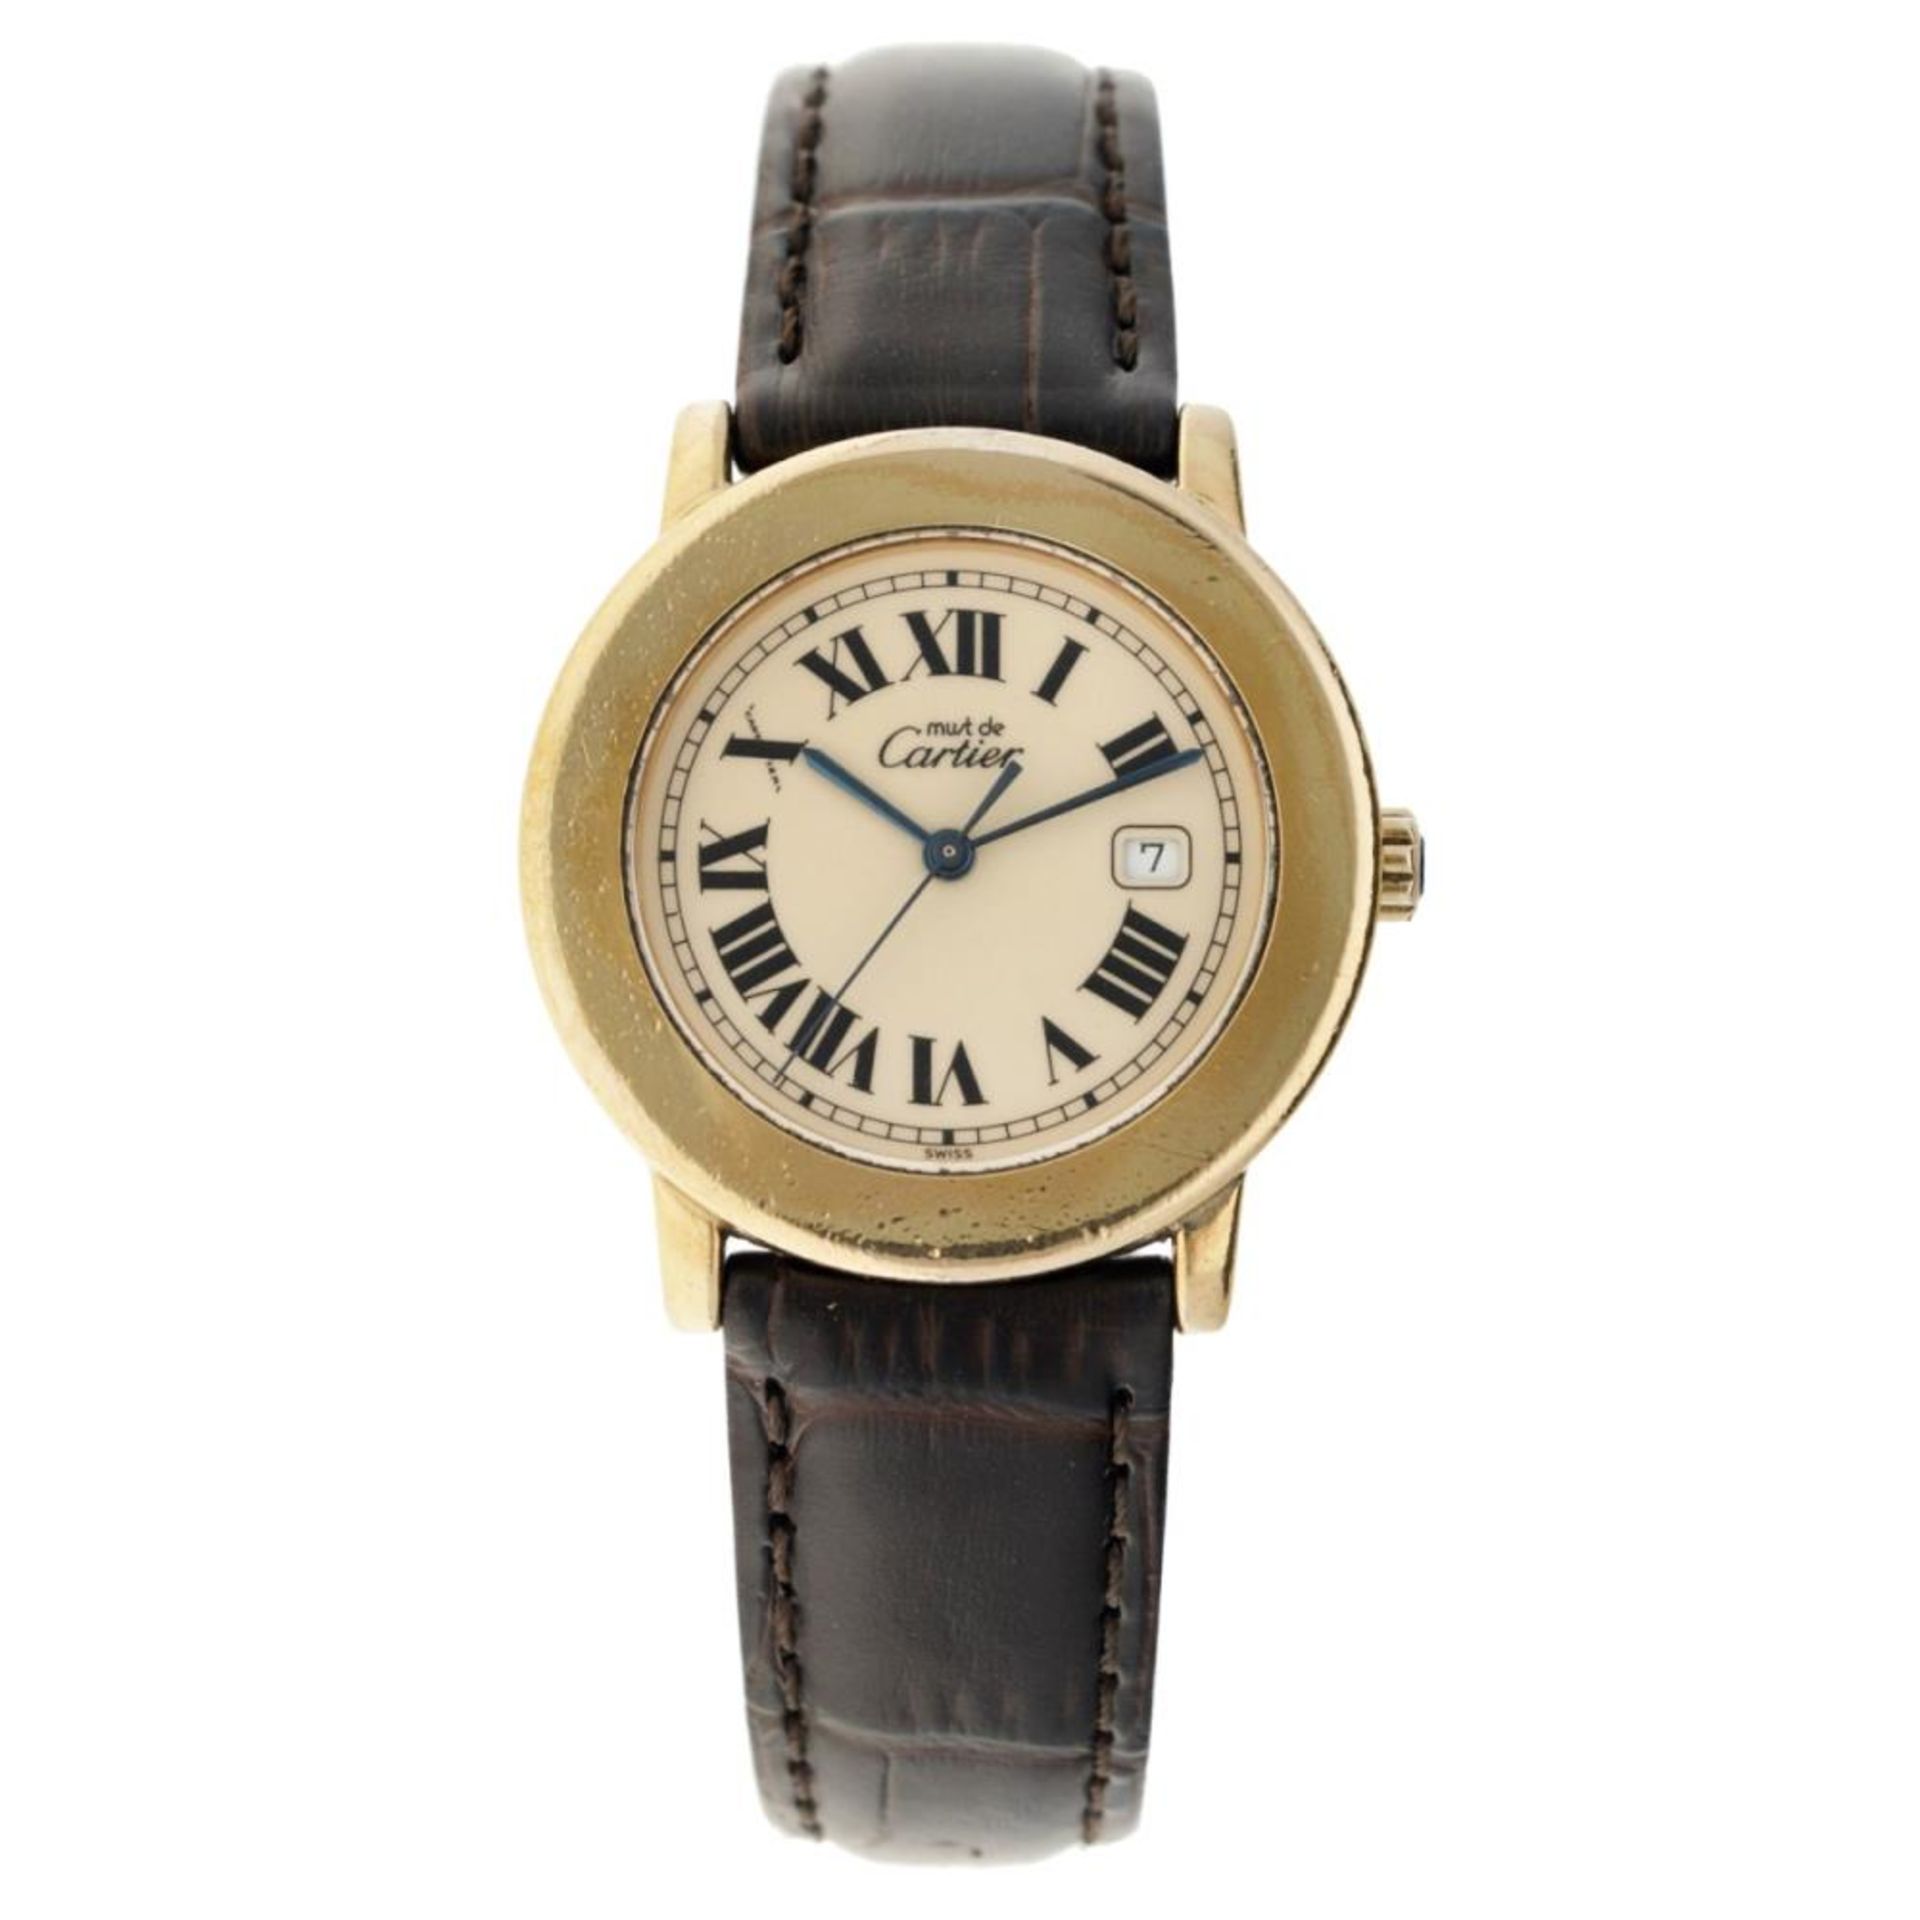 Cartier Must de Cartier Ronde 1800 1 - Ladies watch - approx. 1994.